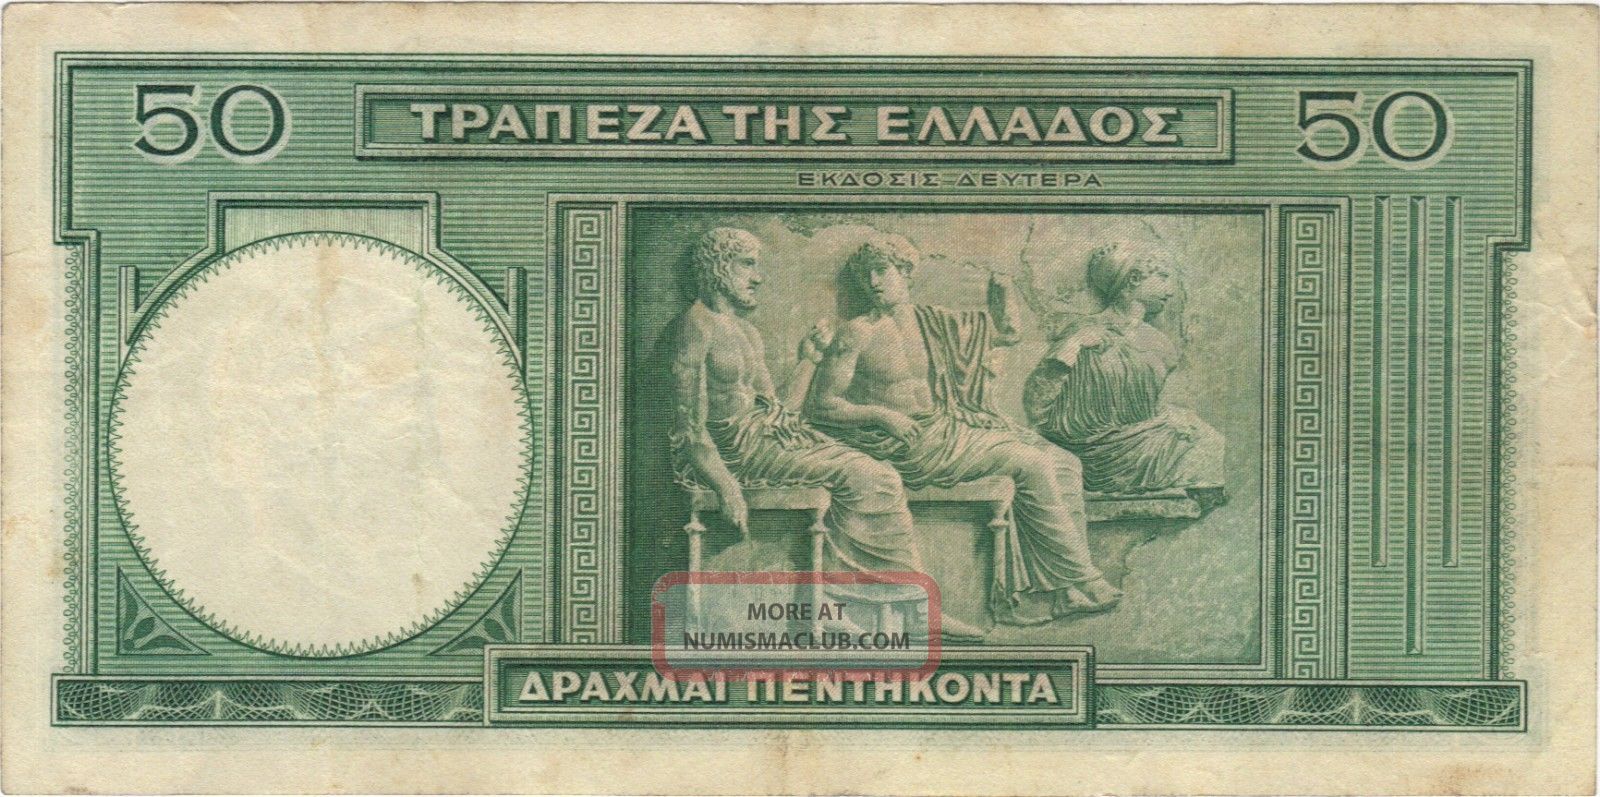 1939-50-drachma-greece-greek-currency-banknote-note-money-bank-bill